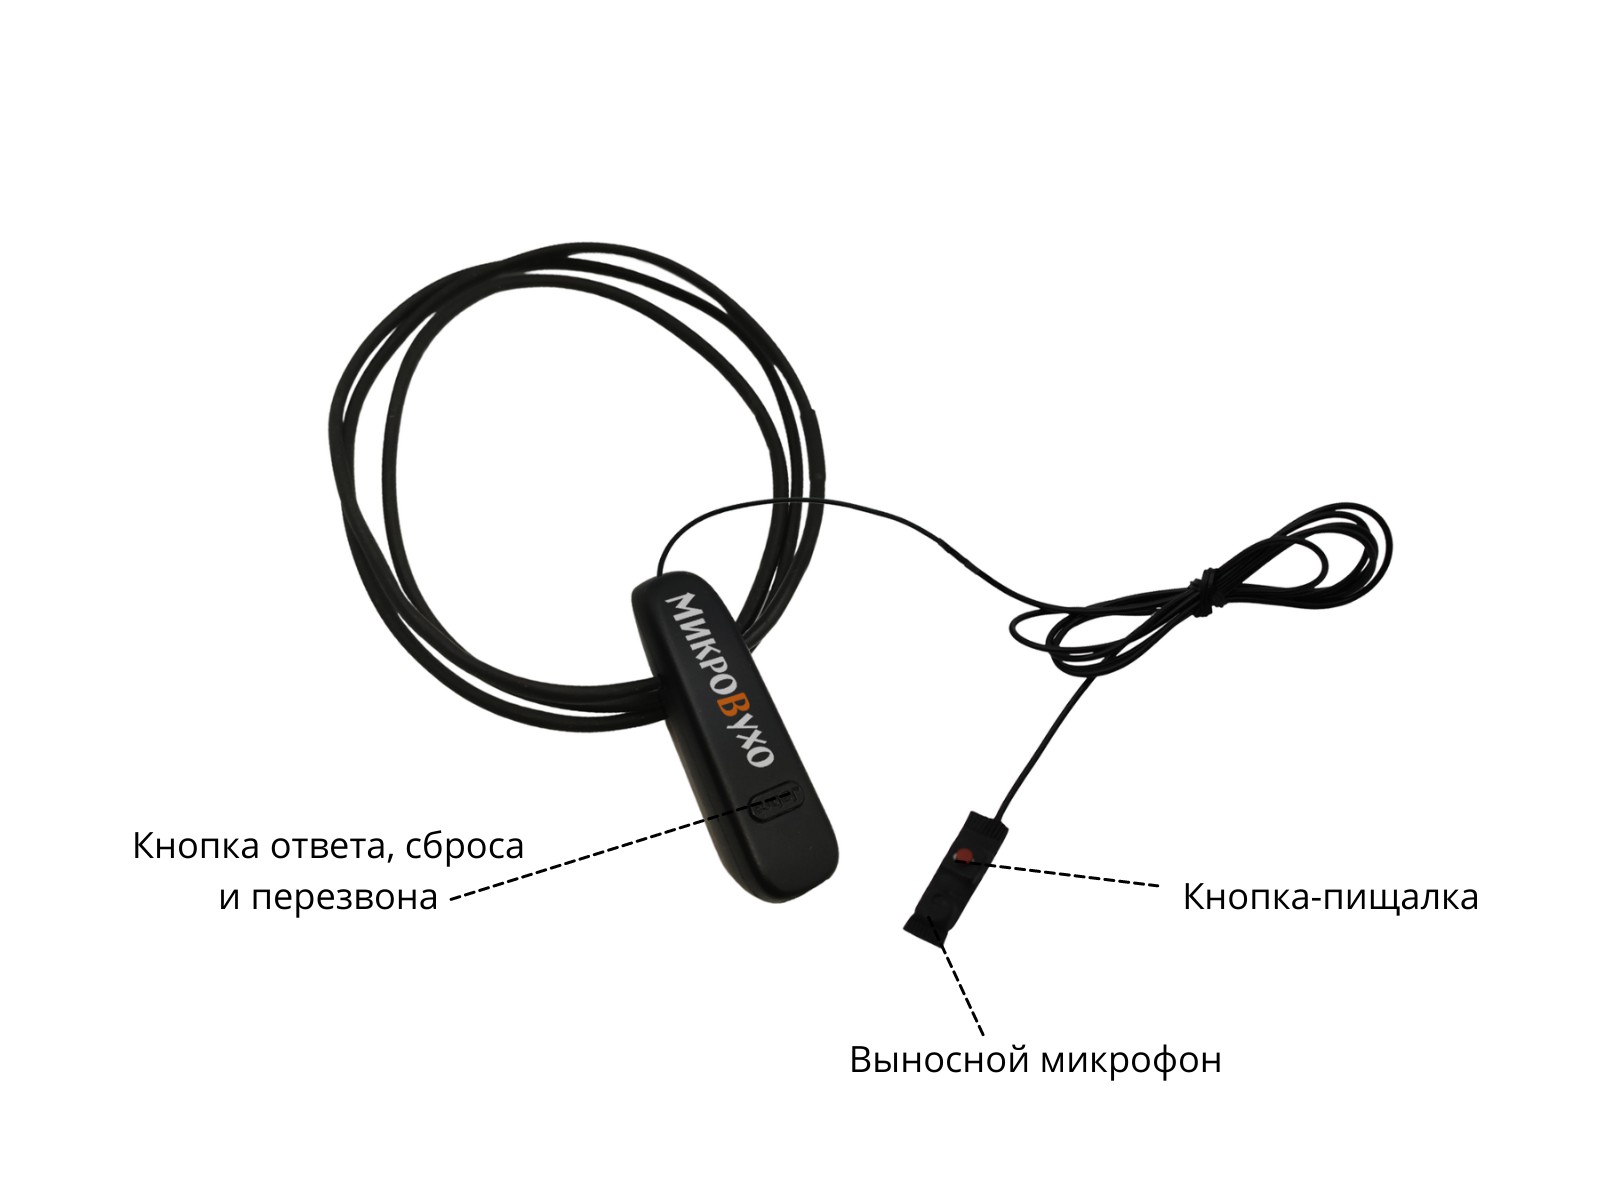 Гарнитура Bluetooth Jabra с капсульным микронаушником K5 4 мм 4